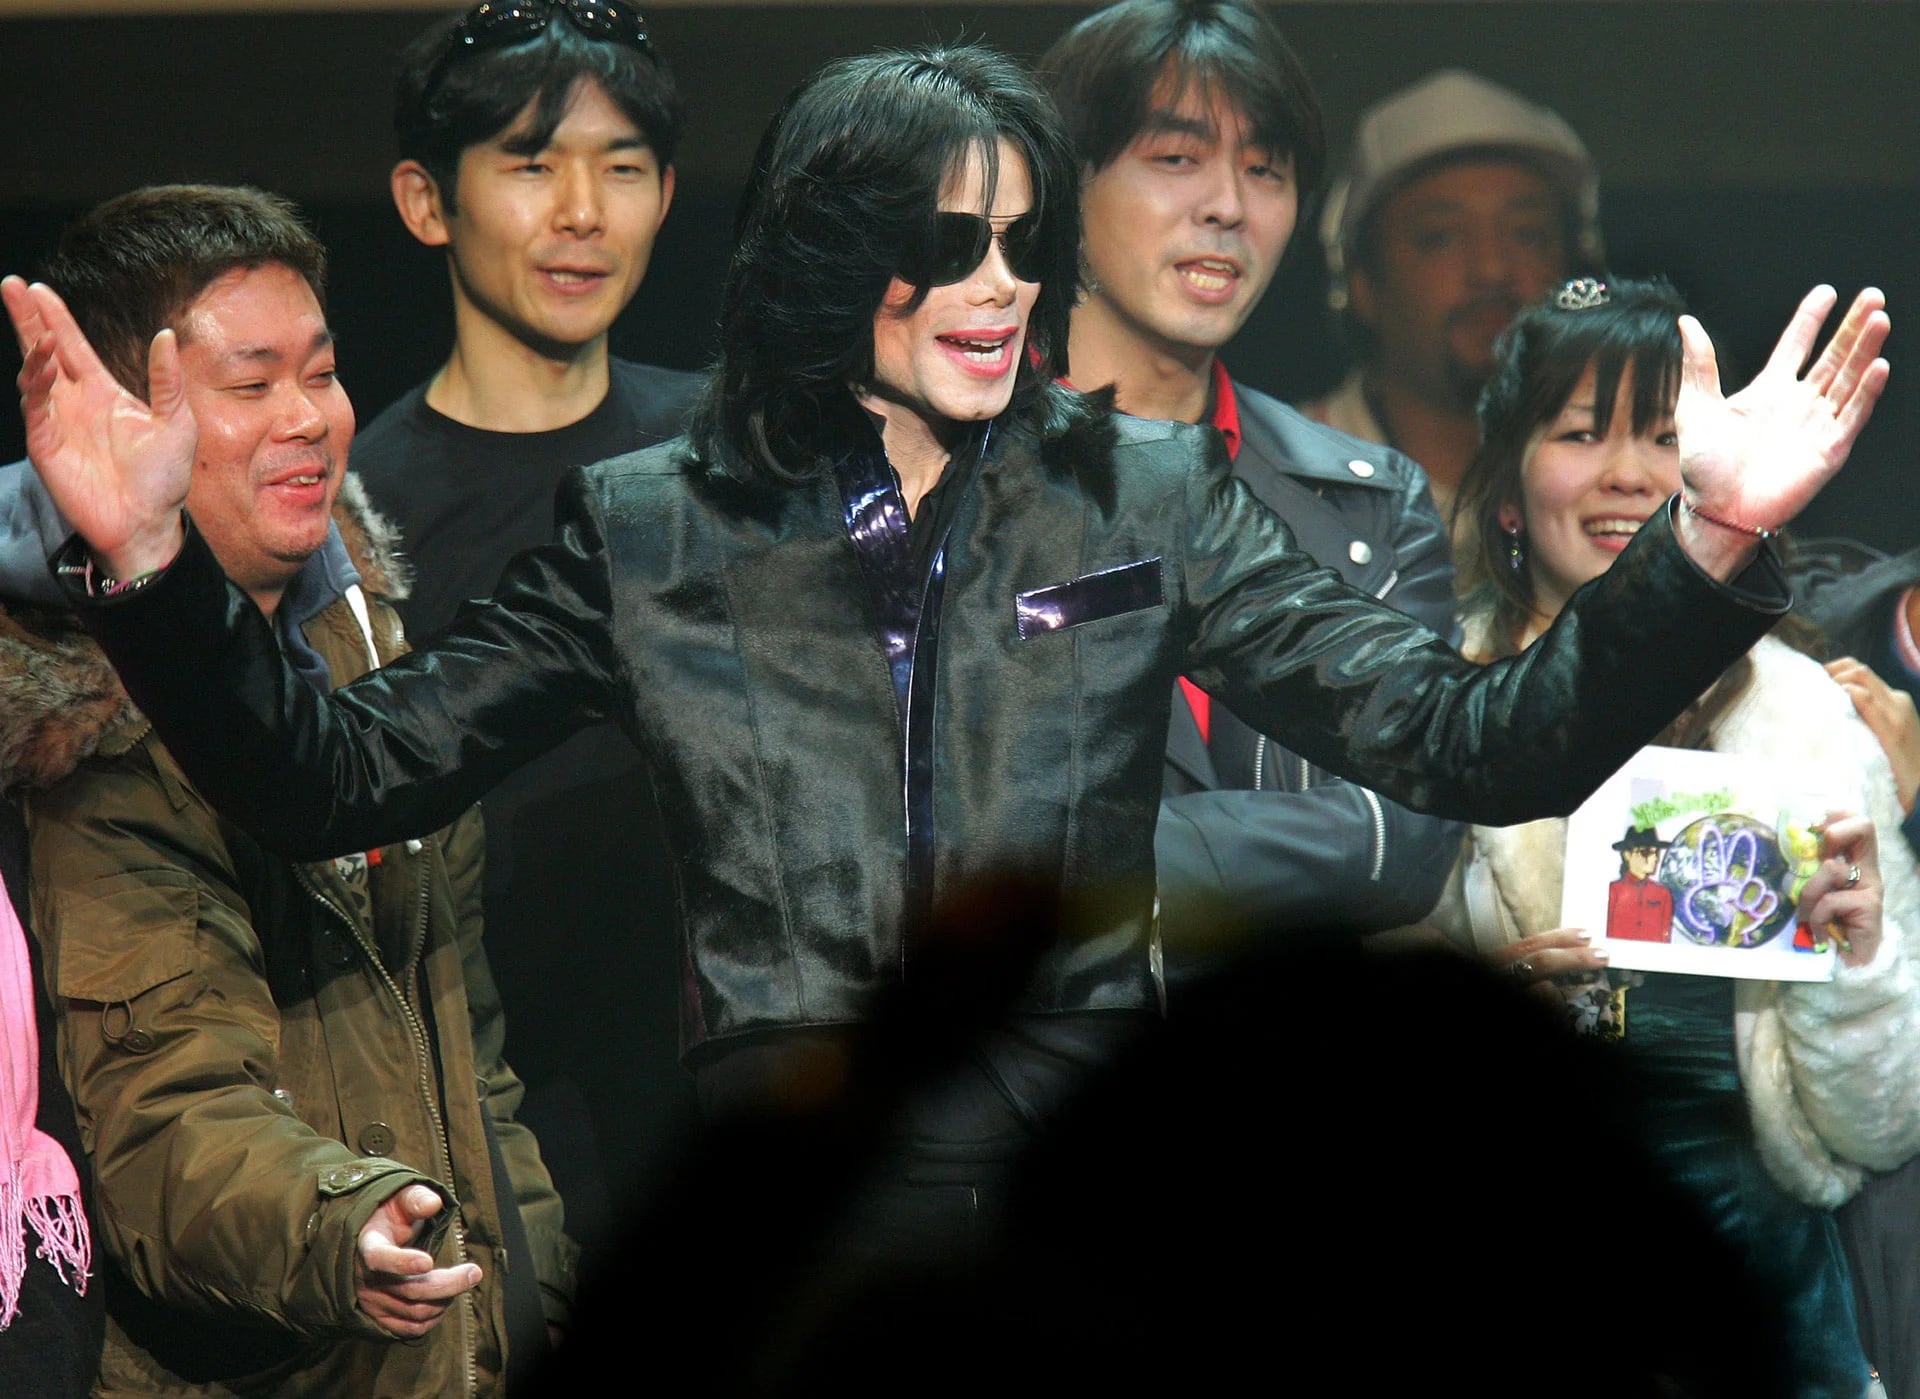 Michael Jackson junto con sus fans en el evento “Fan Appreciation Day” en Tokyo (Marzo del 2007)